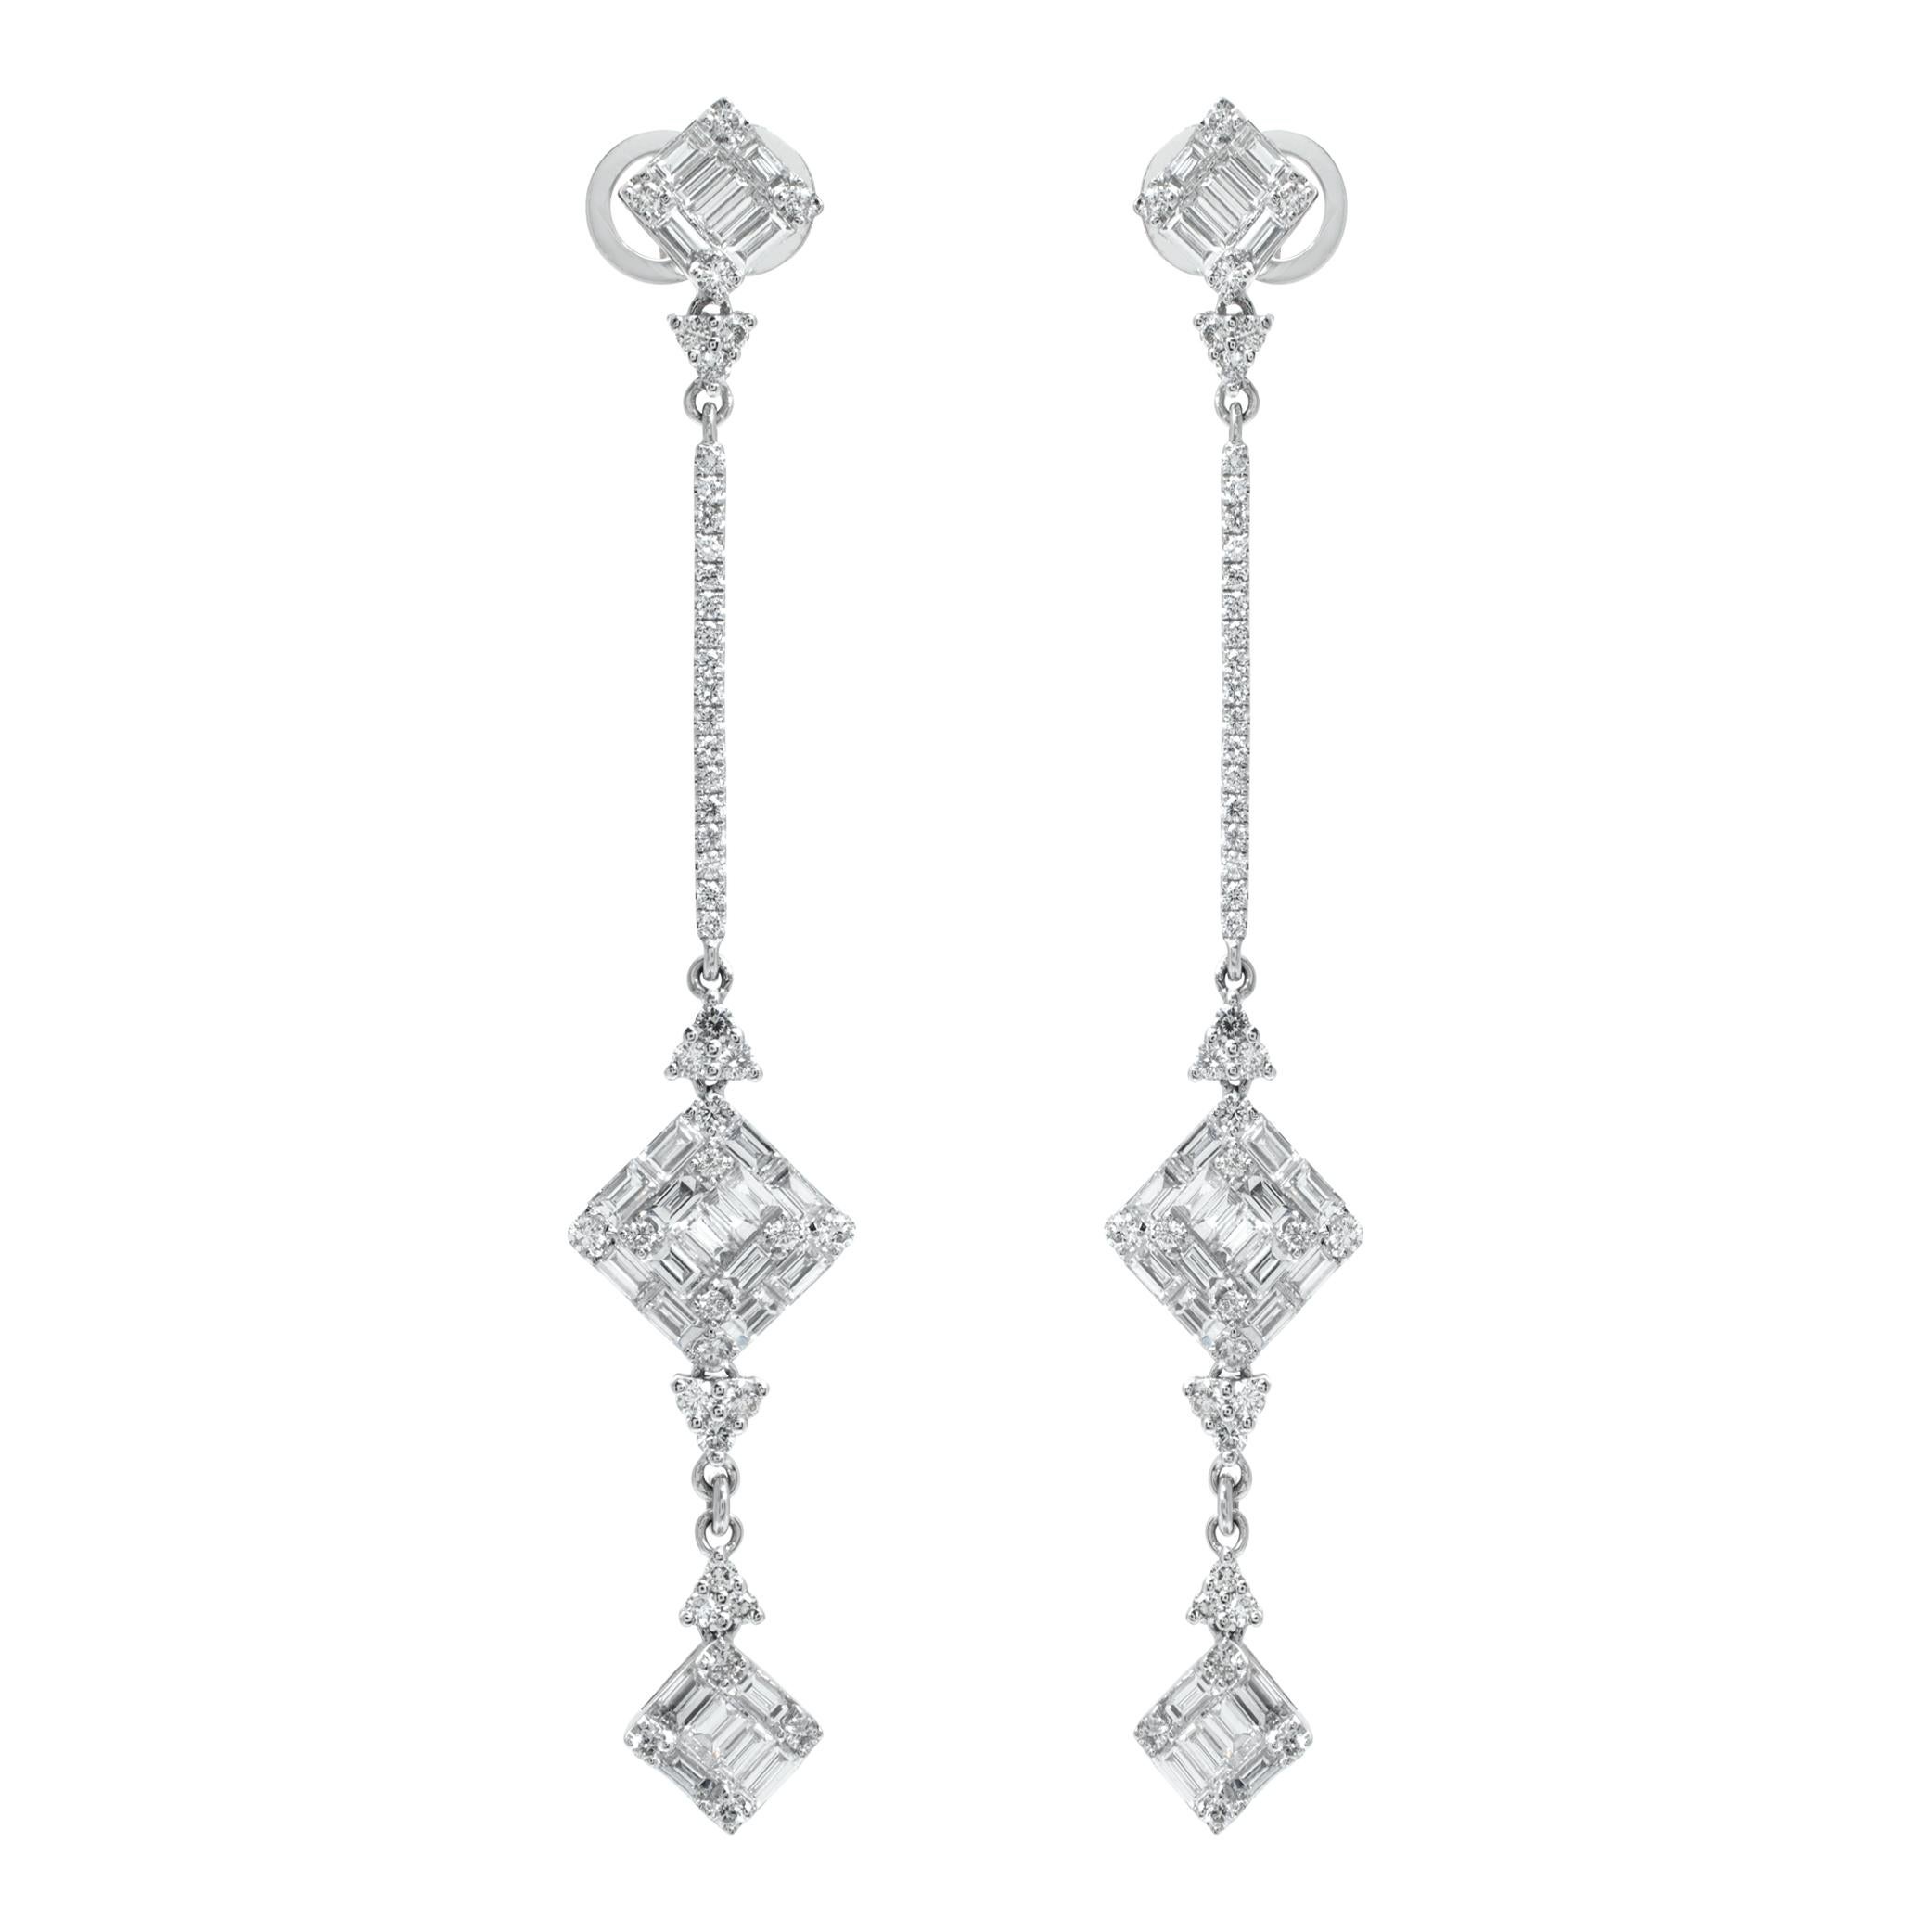 Diamond 18k white gold hanging earrings